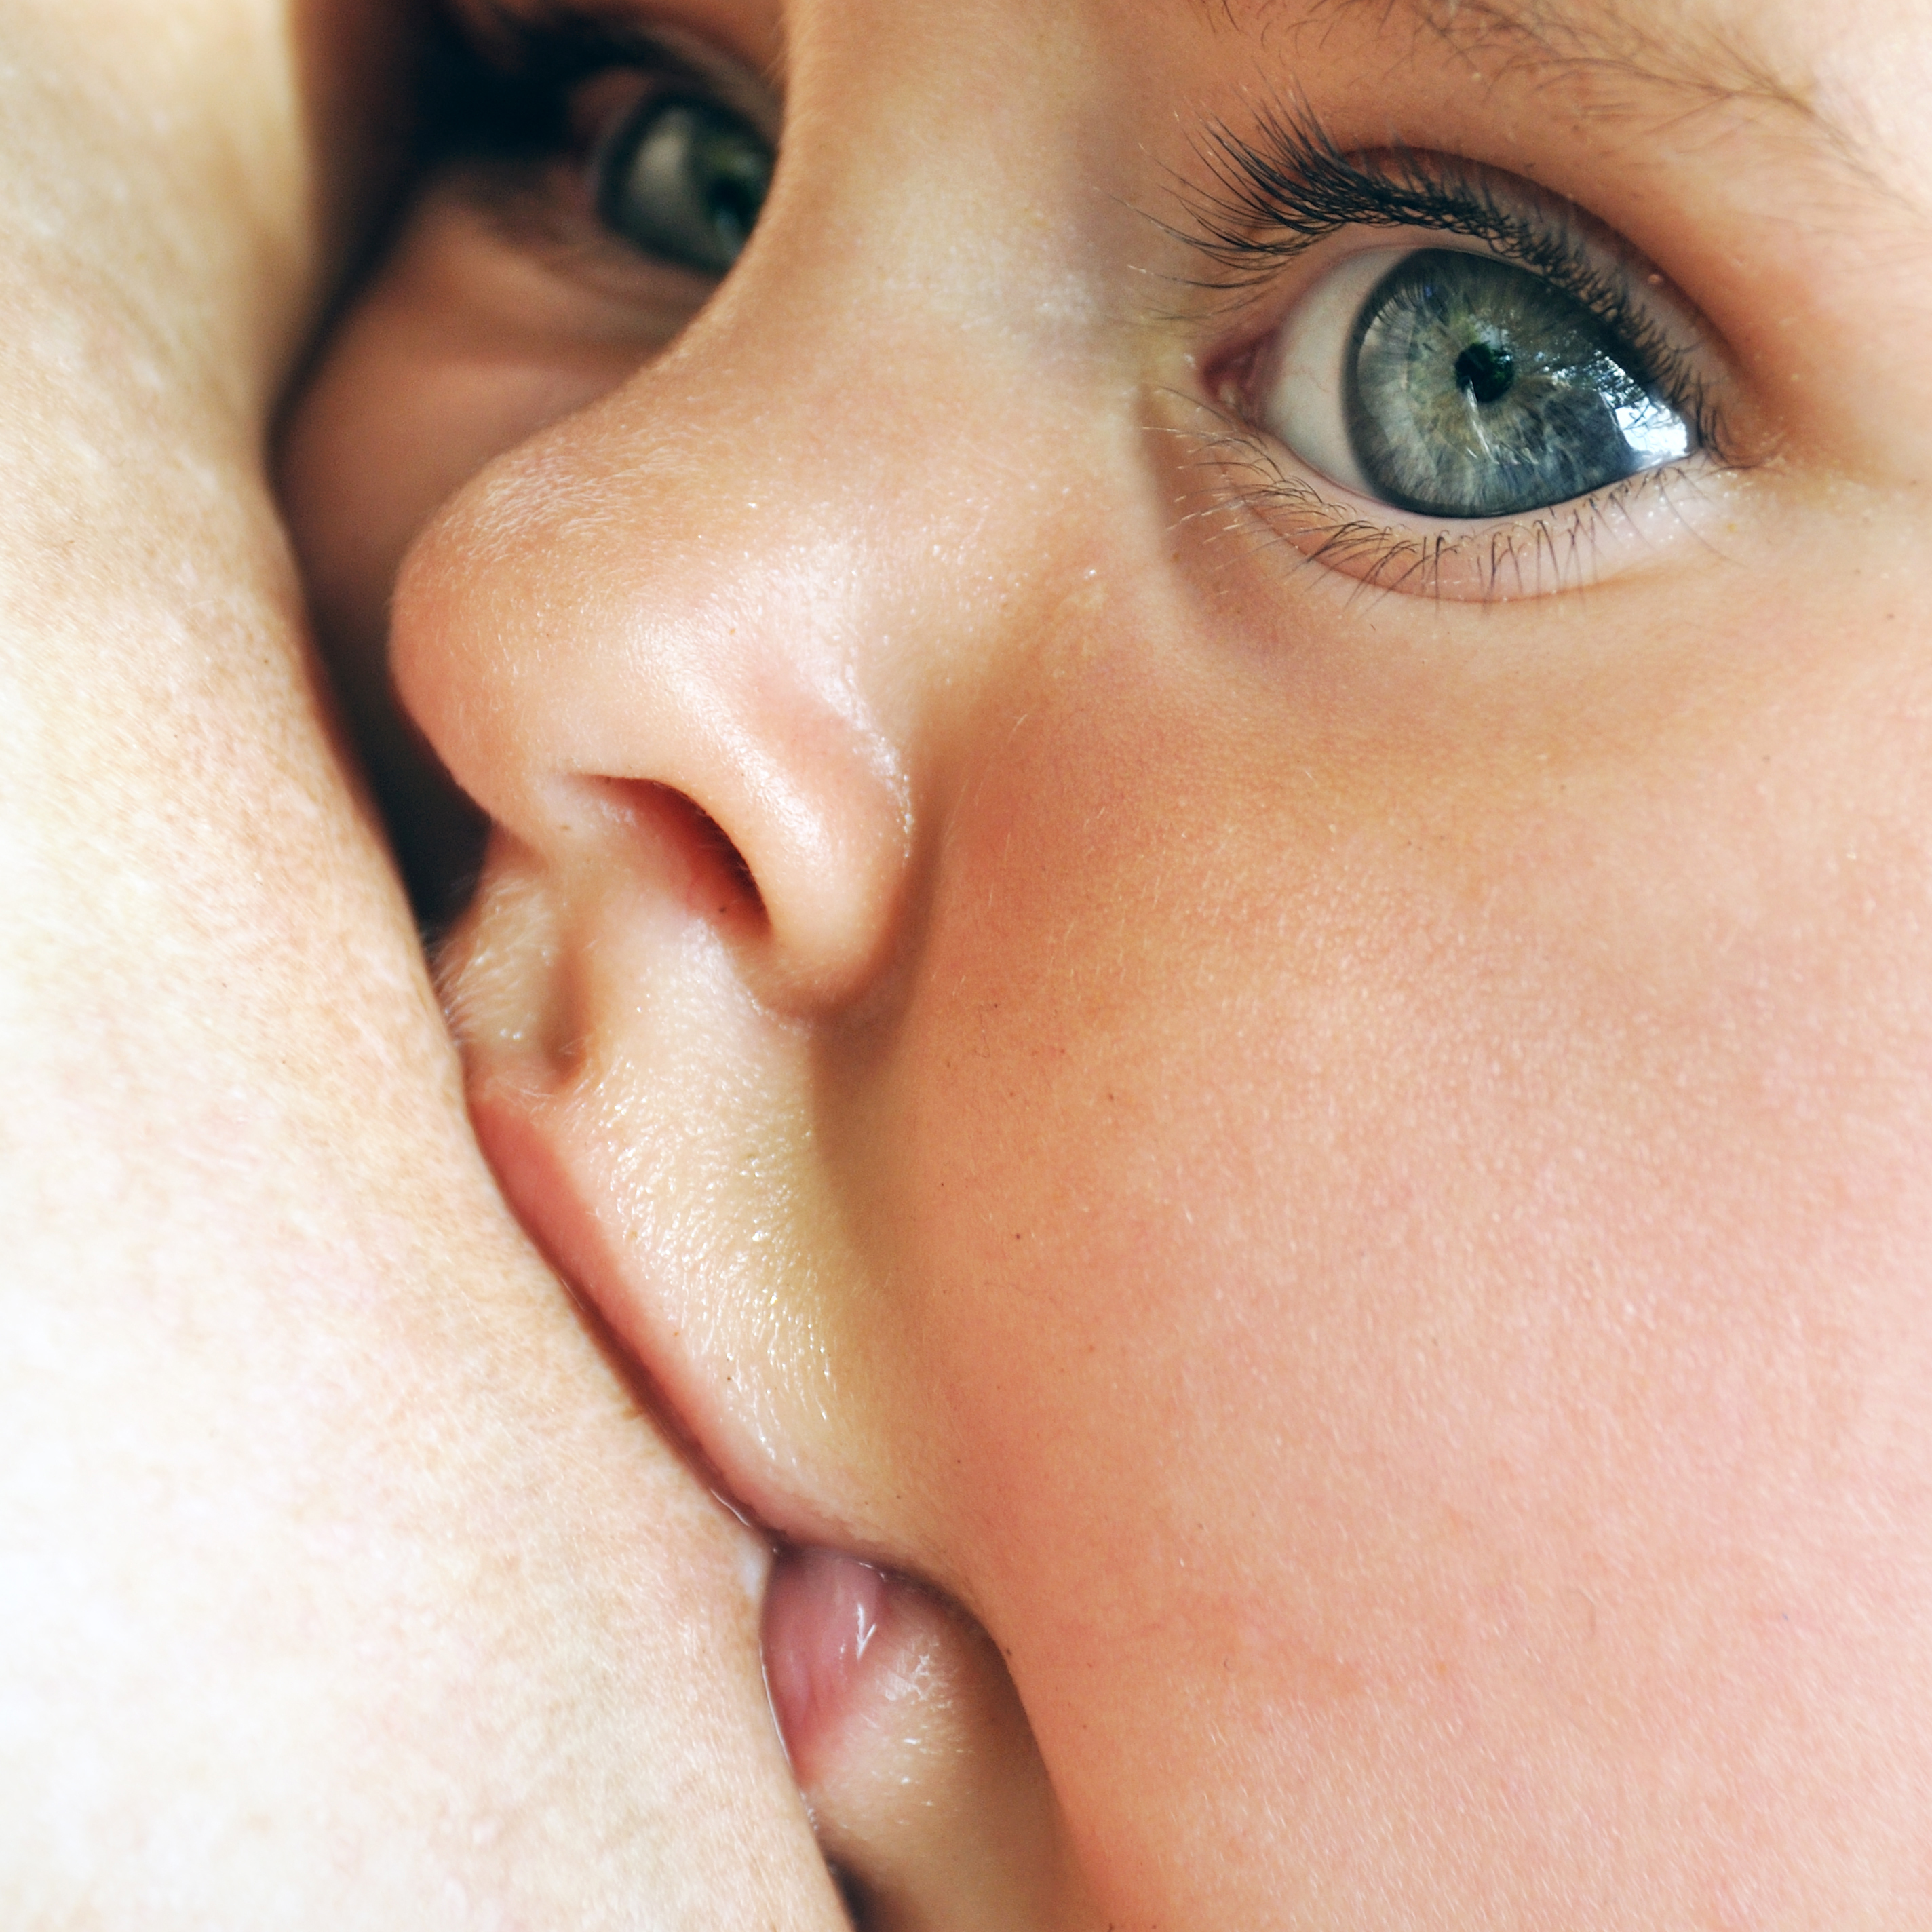 Baby breastfeeding with big blue eyes